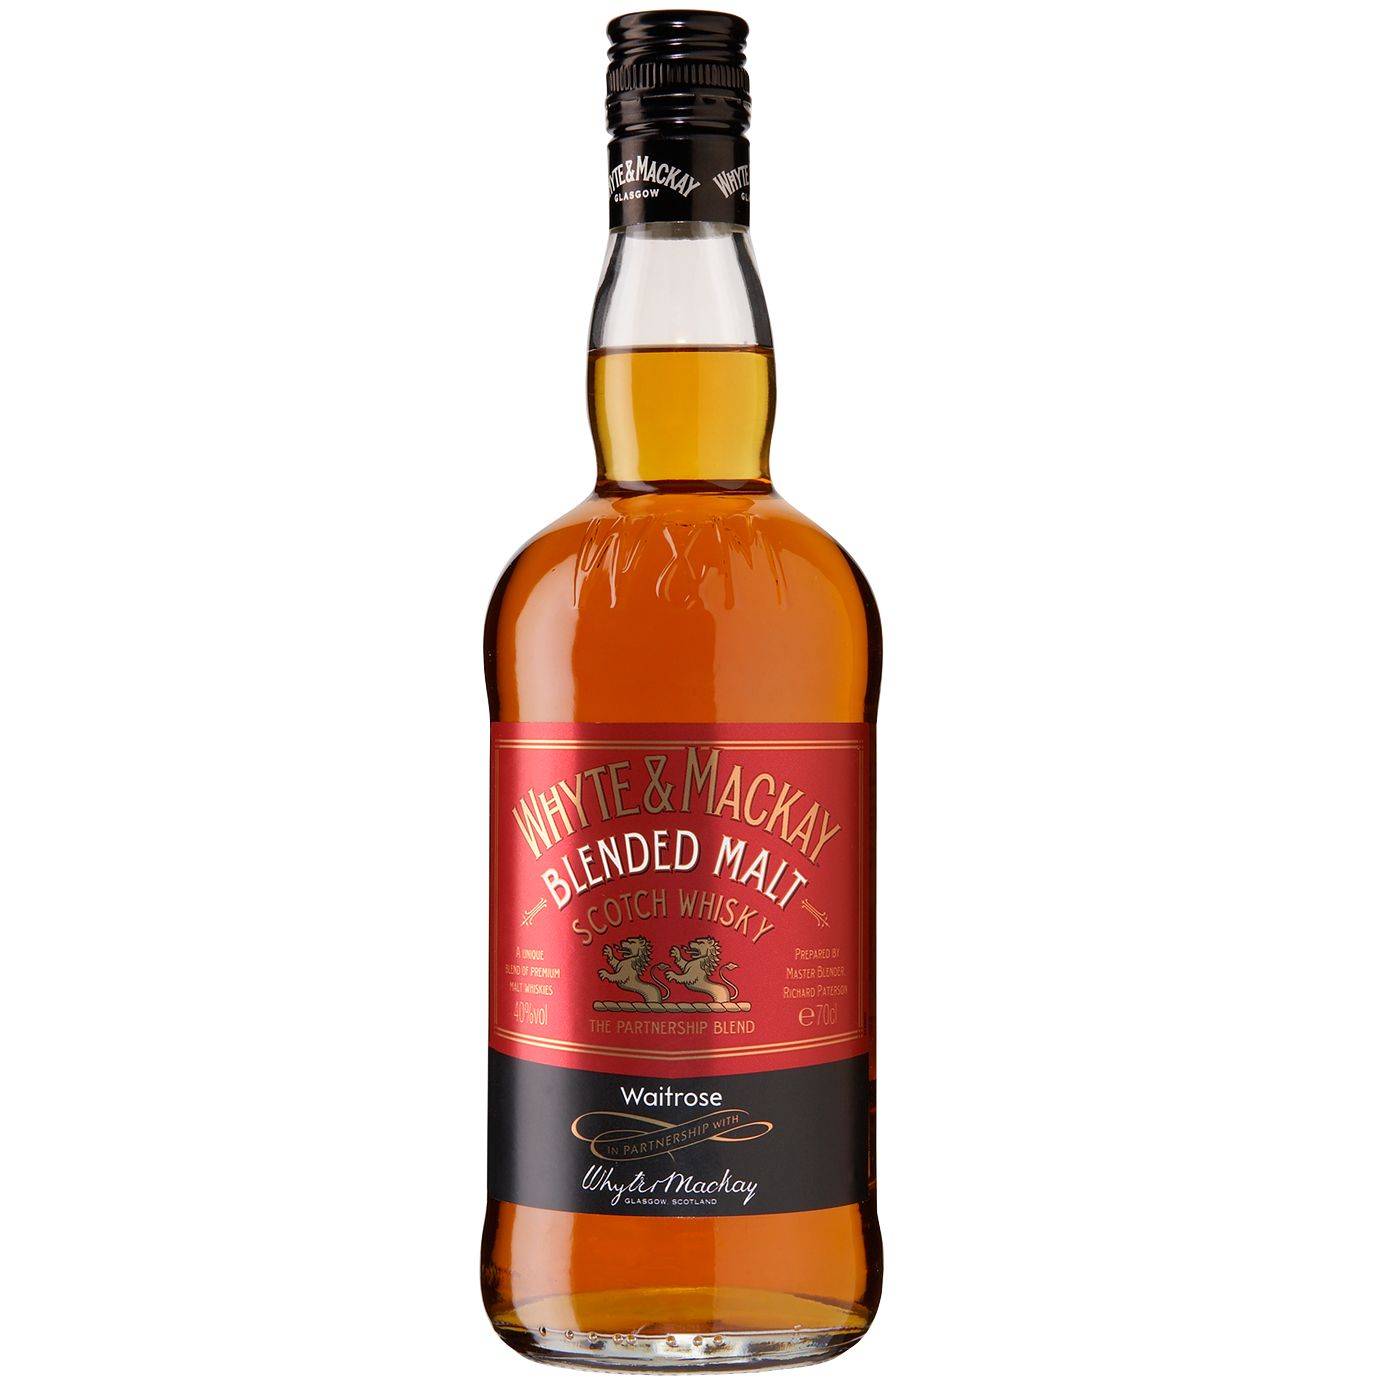 Waitrose Blended Scotch Malt Whisky, Whyte & Mackay